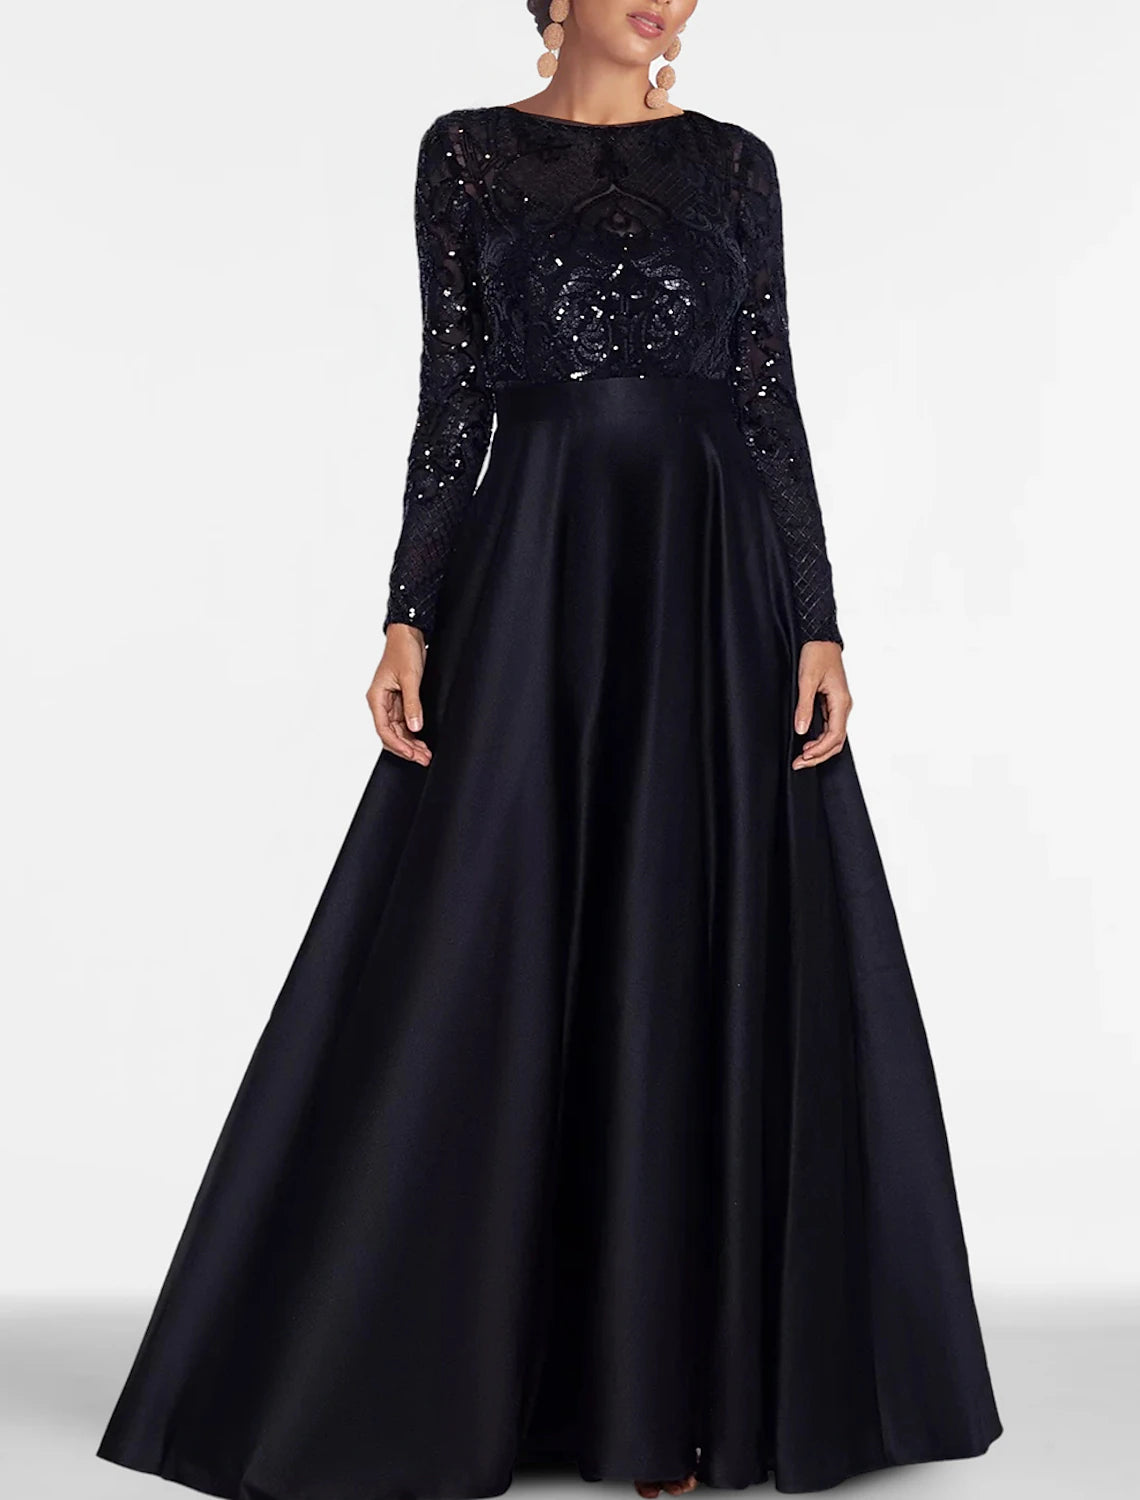 A-Line Evening Gown Elegant Dress Formal Black Tie Floor Length Long Sleeve Off Shoulder Fall Wedding Guest Satin with Slit Pocket